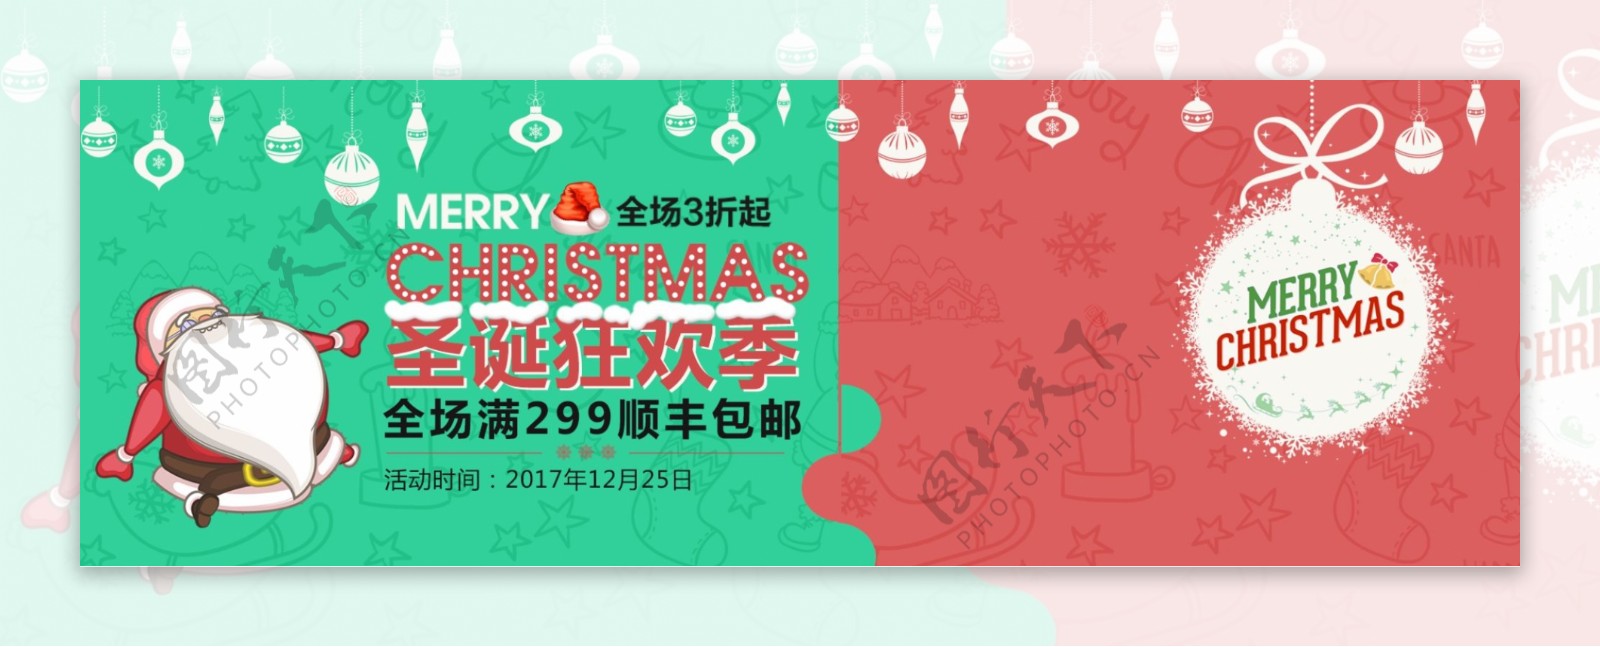 红绿卡通圣诞节圣诞狂欢淘宝banner